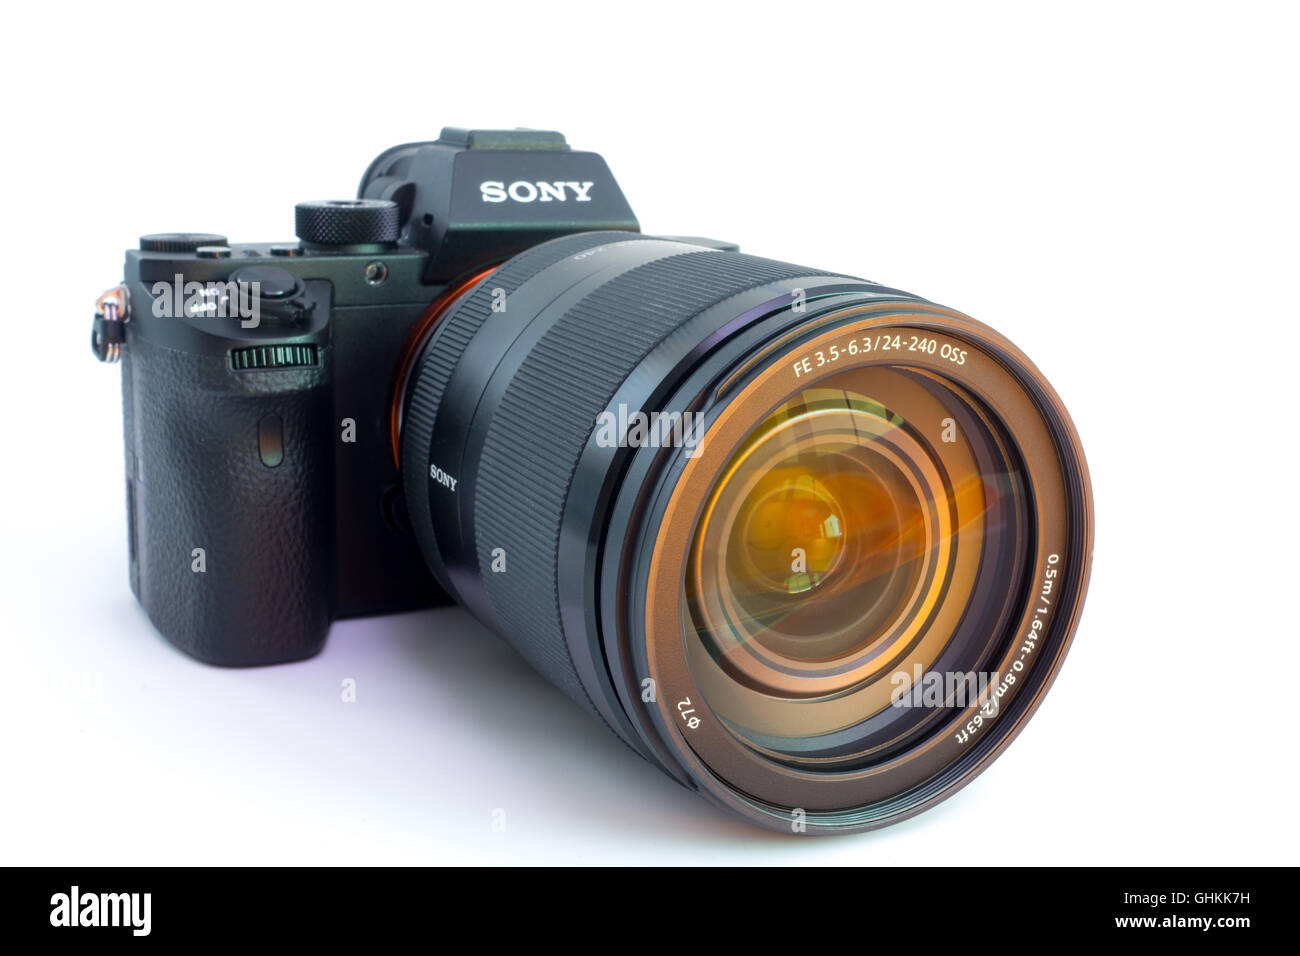 27. 10. 2015, Berlin, Germania: Sony Alpha a7R II ILCE-7RM2 Mirrorless fotocamera digitale (solo corpo) senza obiettivo. Con un mondo di Foto Stock